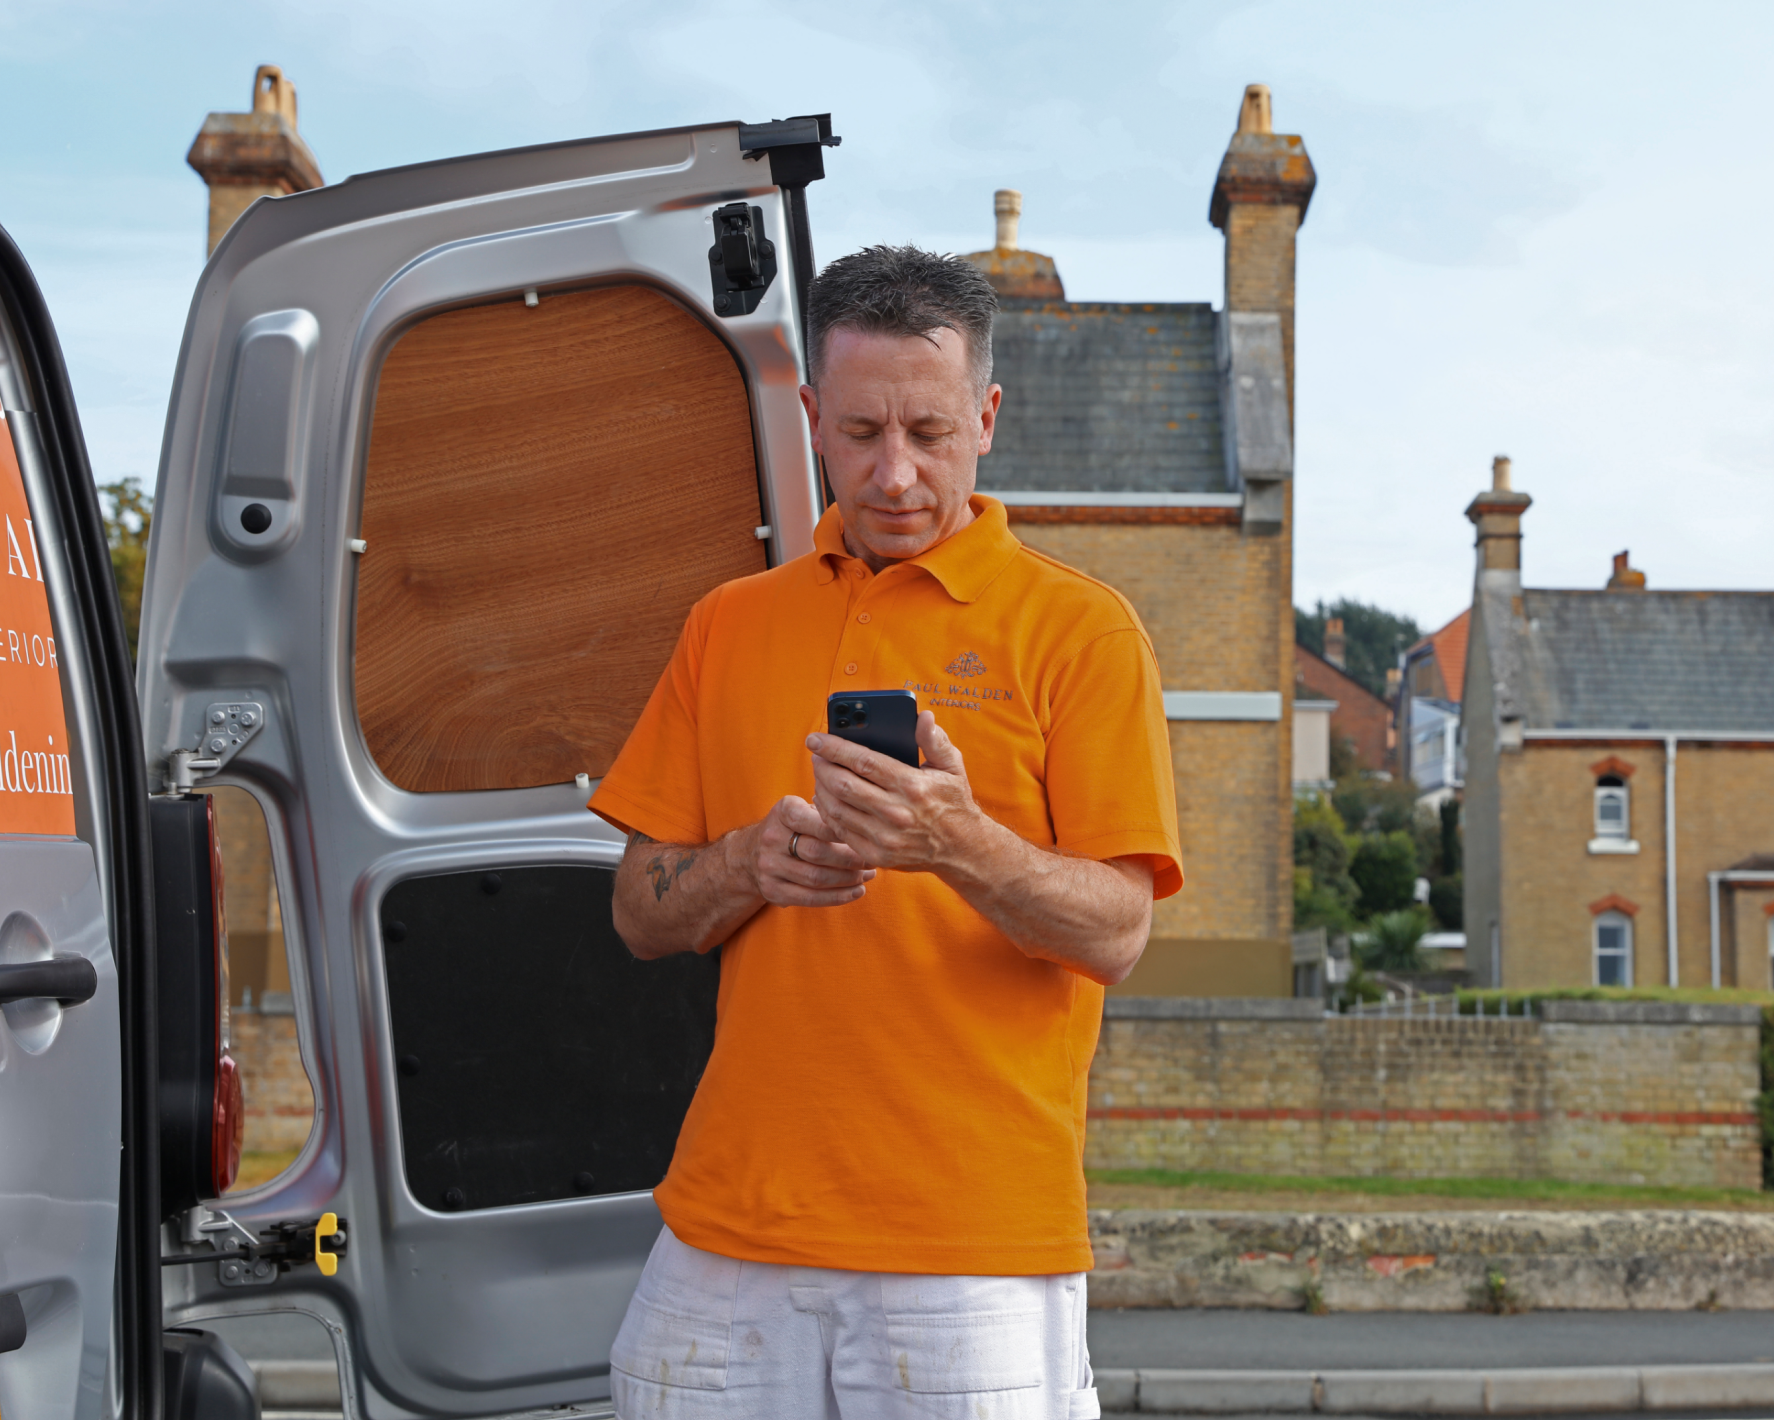 A tradesperson checking a phone next to a van